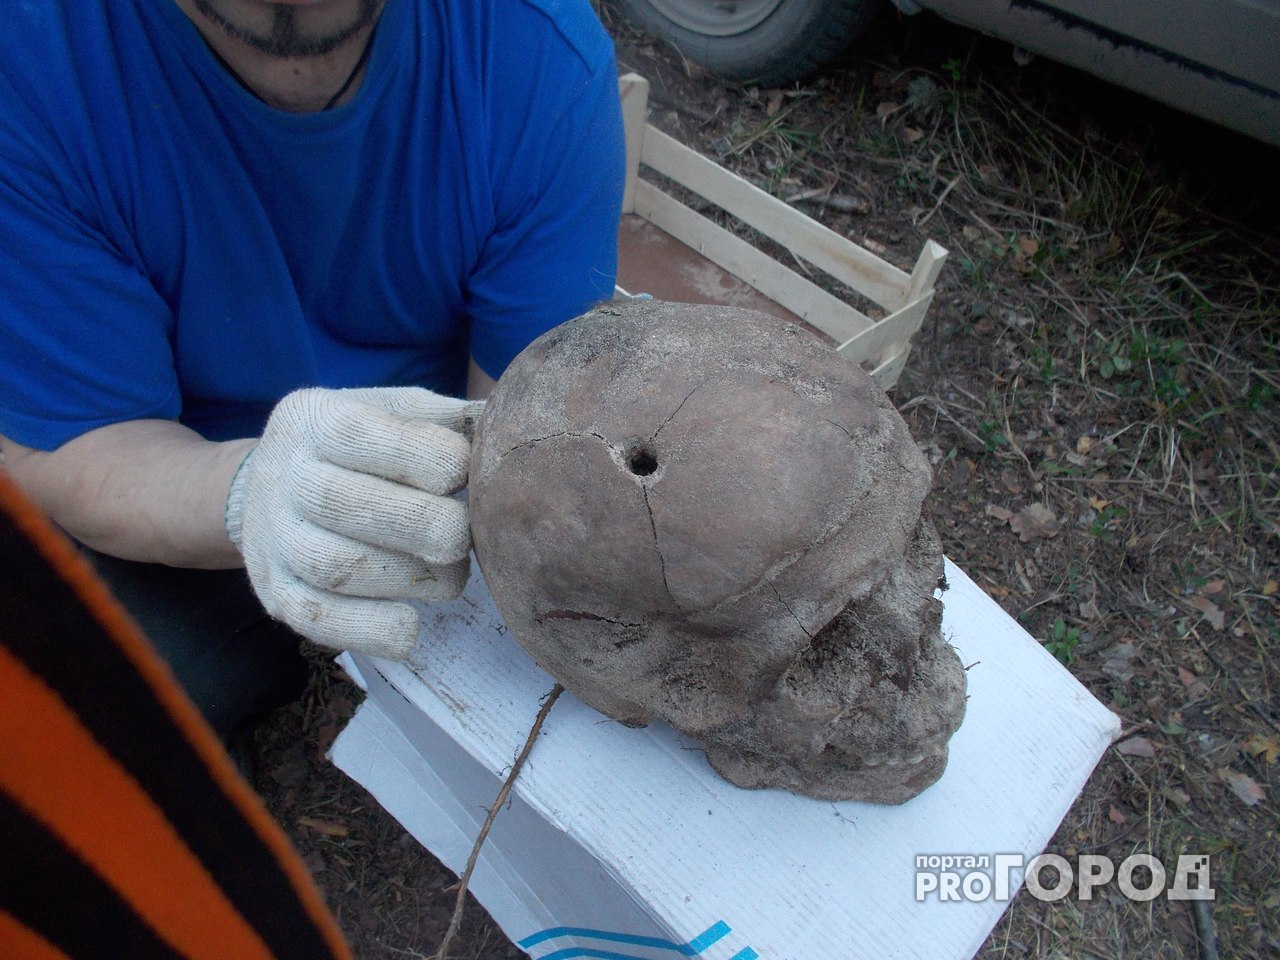 Директора музея ГУЛАГа в Йошкар-Оле оштрафовали за выкопанные кости